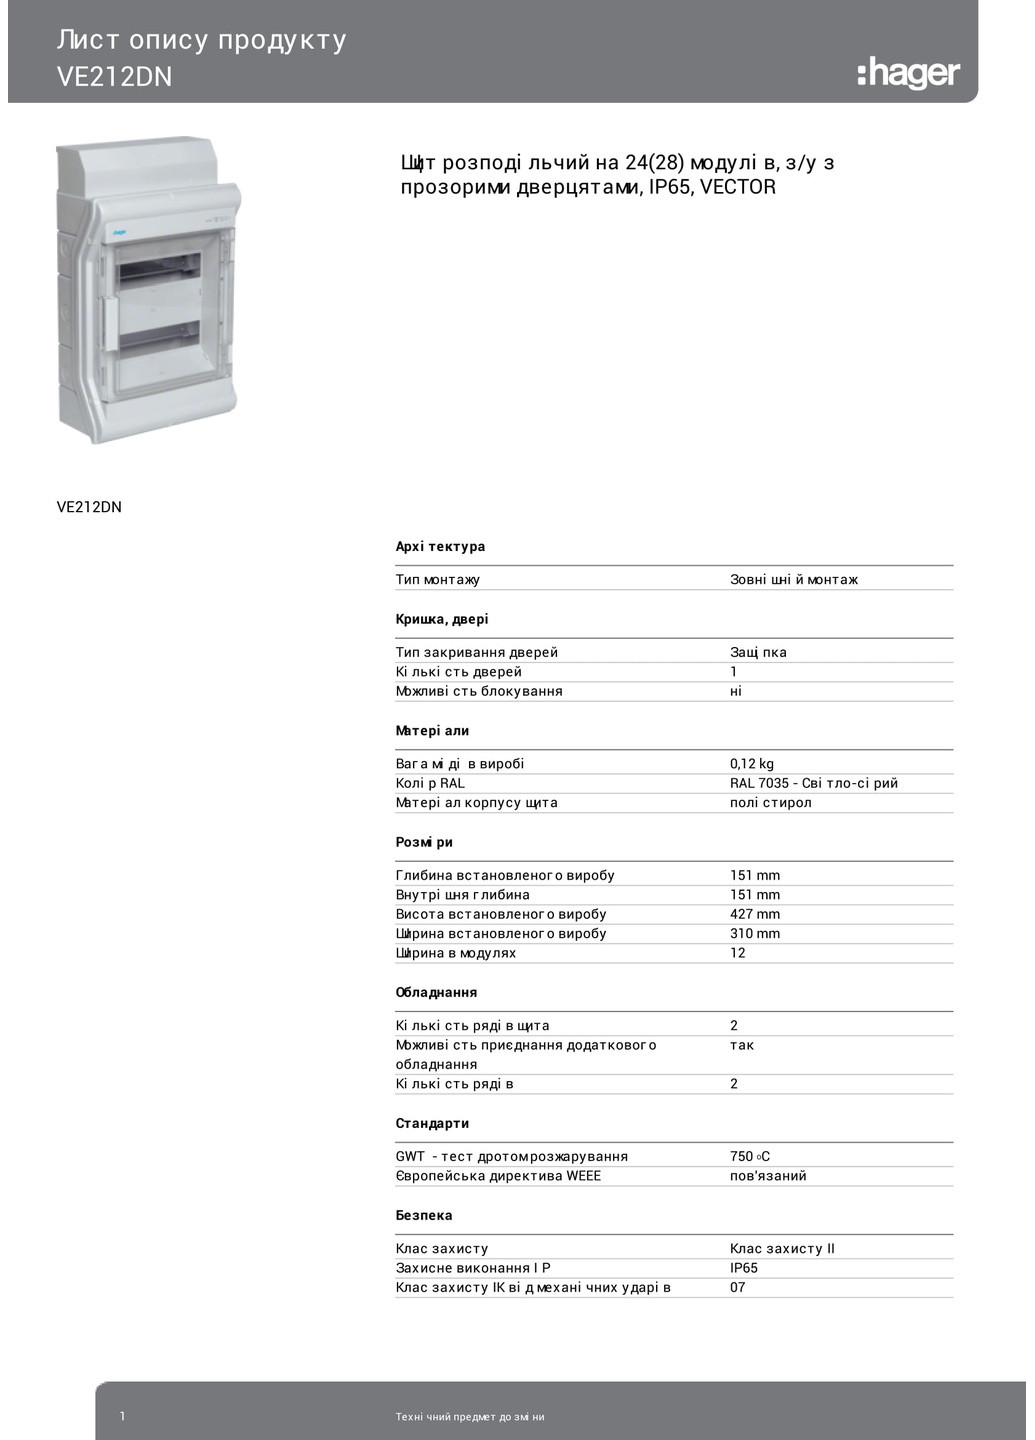 Щит распределительный электрический накладной на 24(28) модуля для автоматов с прозрачной дверцей Vector VE212DN для внеш Hager (265535336)